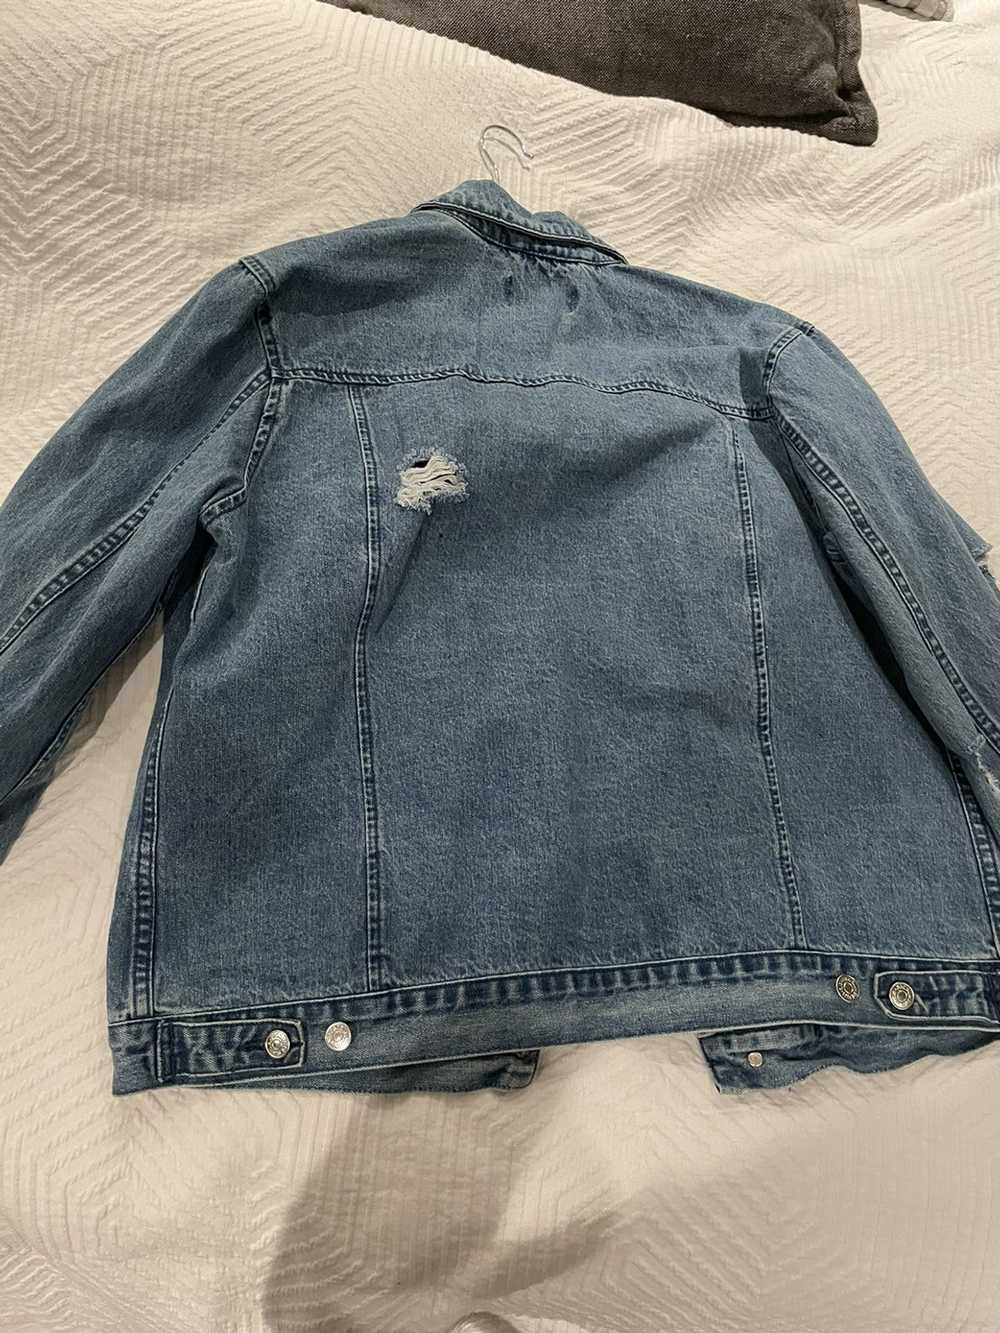 Pacsun Pacsun jean jacket - image 5